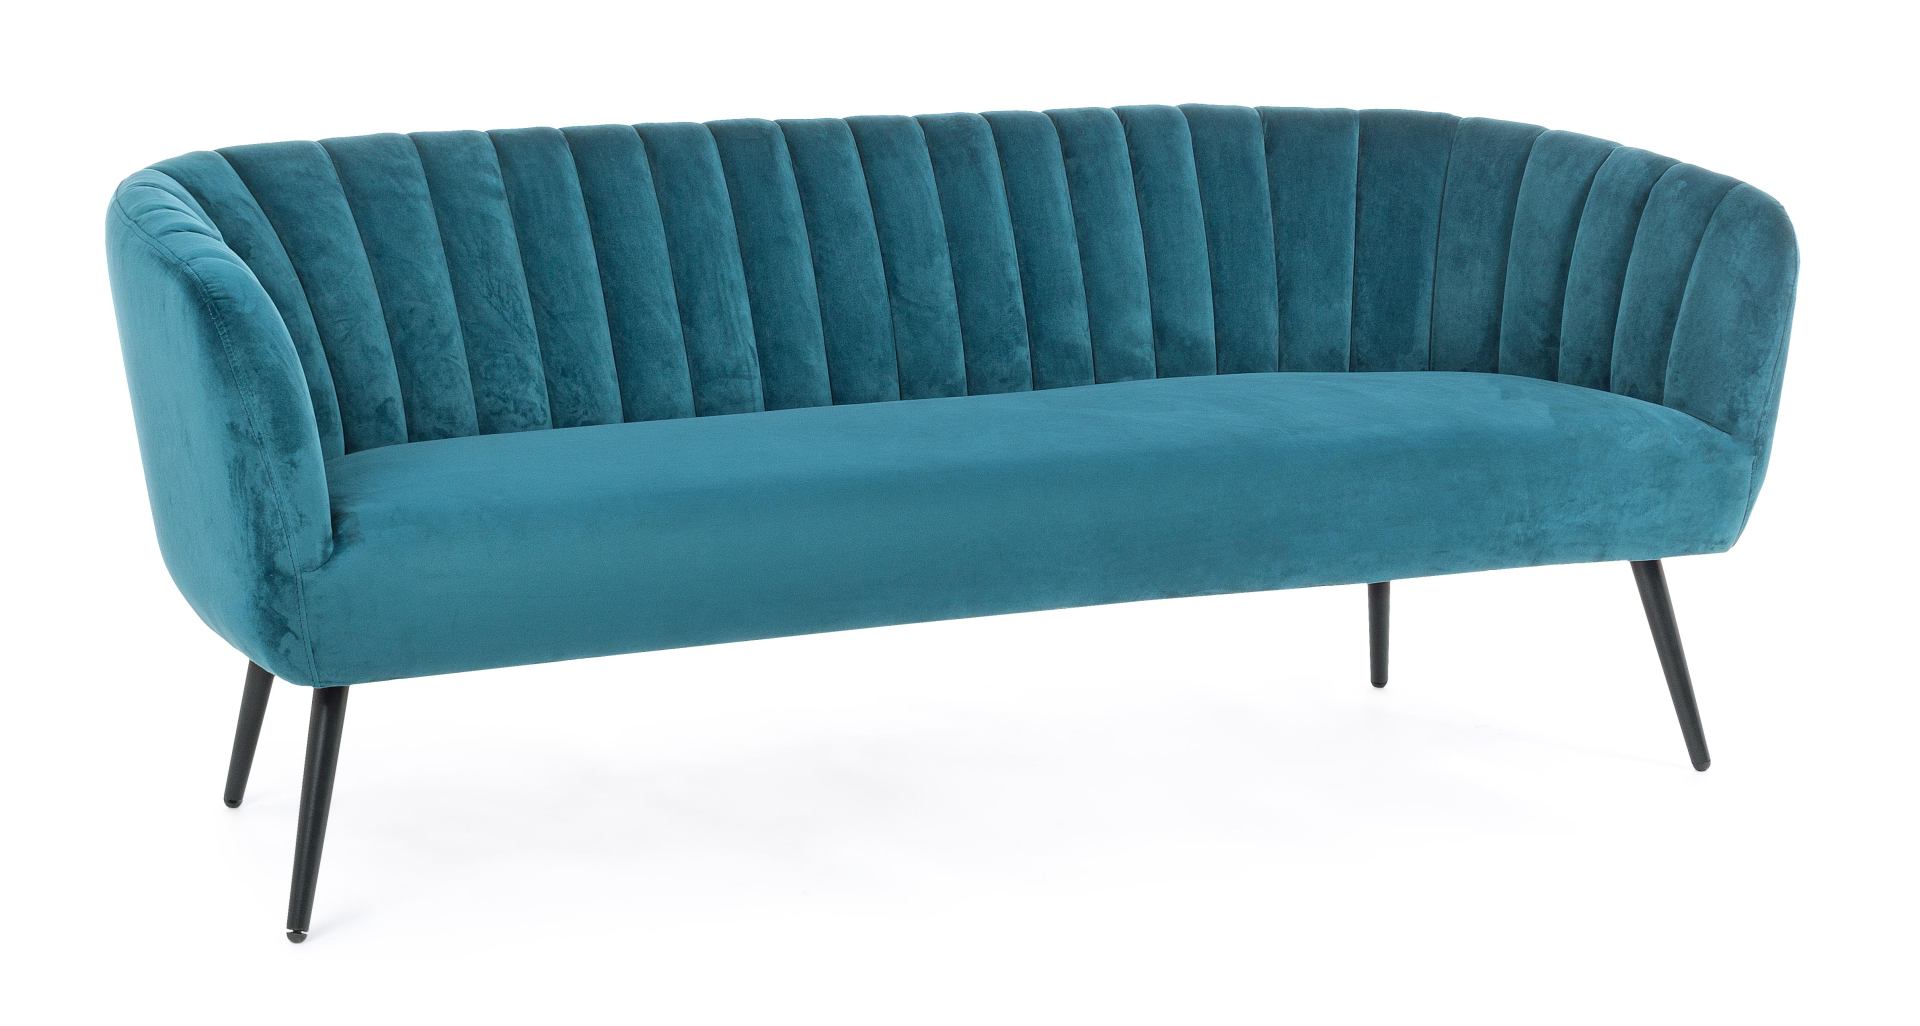 Das Sofa Avril überzeugt mit seinem modernen Design. Gefertigt wurde es aus Stoff in Samt-Optik, welcher einen blauen Farbton besitzt. Das Gestell ist aus Metall und hat eine schwarze Farbe. Das Sofa ist in der Ausführung als 3-Sitzer. Die Breite beträgt 